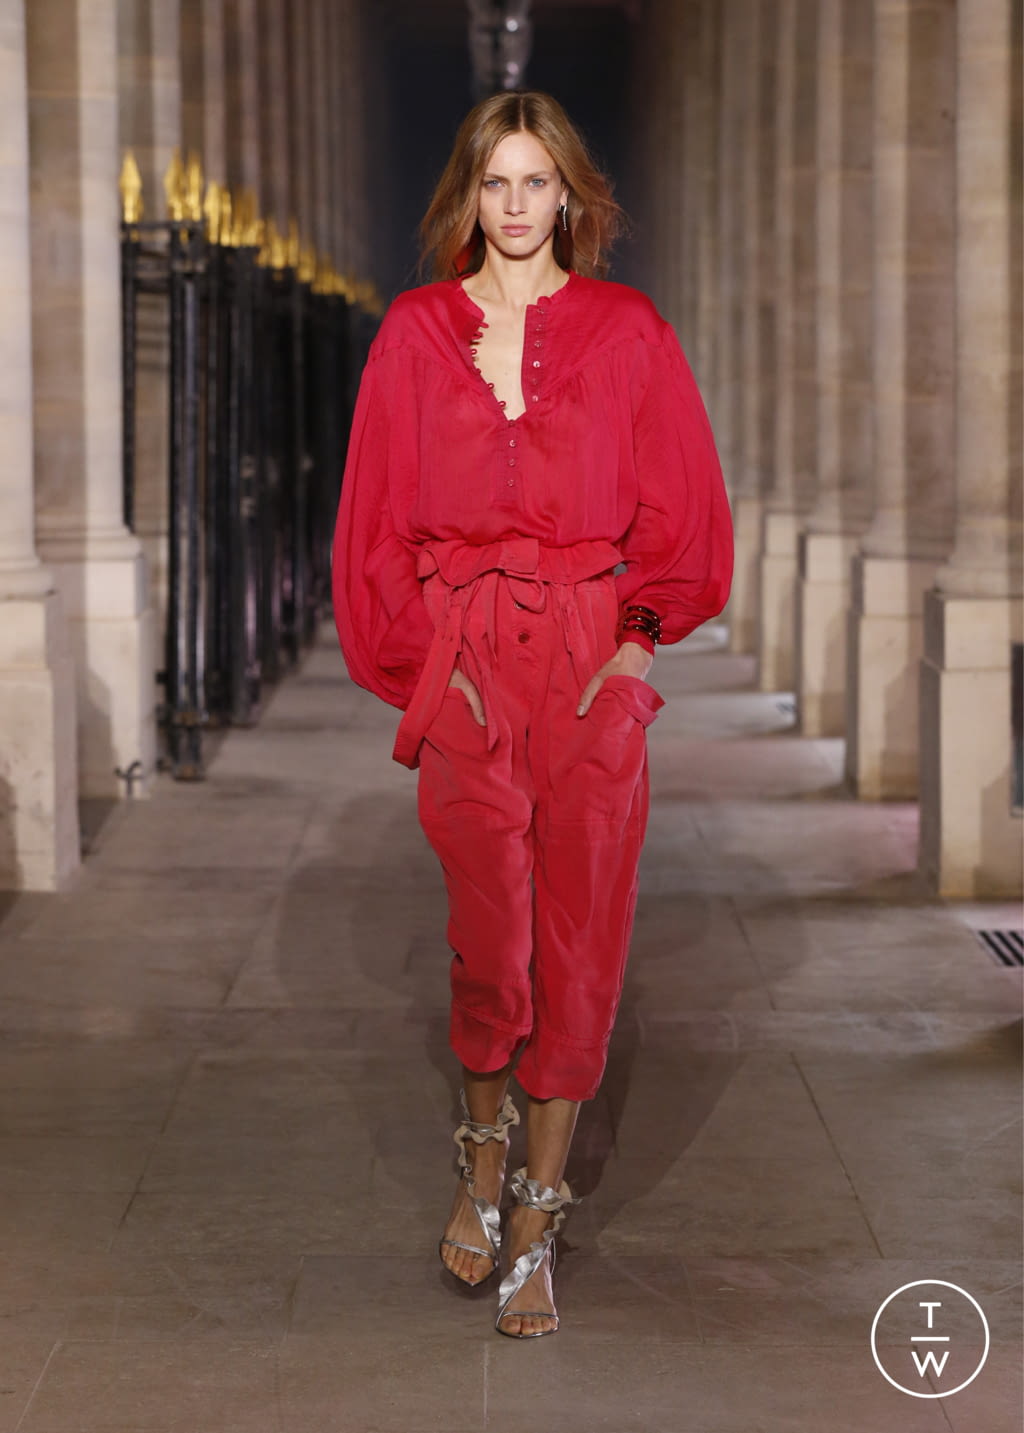 Isabel Marant SS21 womenswear #16 - Tagwalk: The Fashion Search Engine